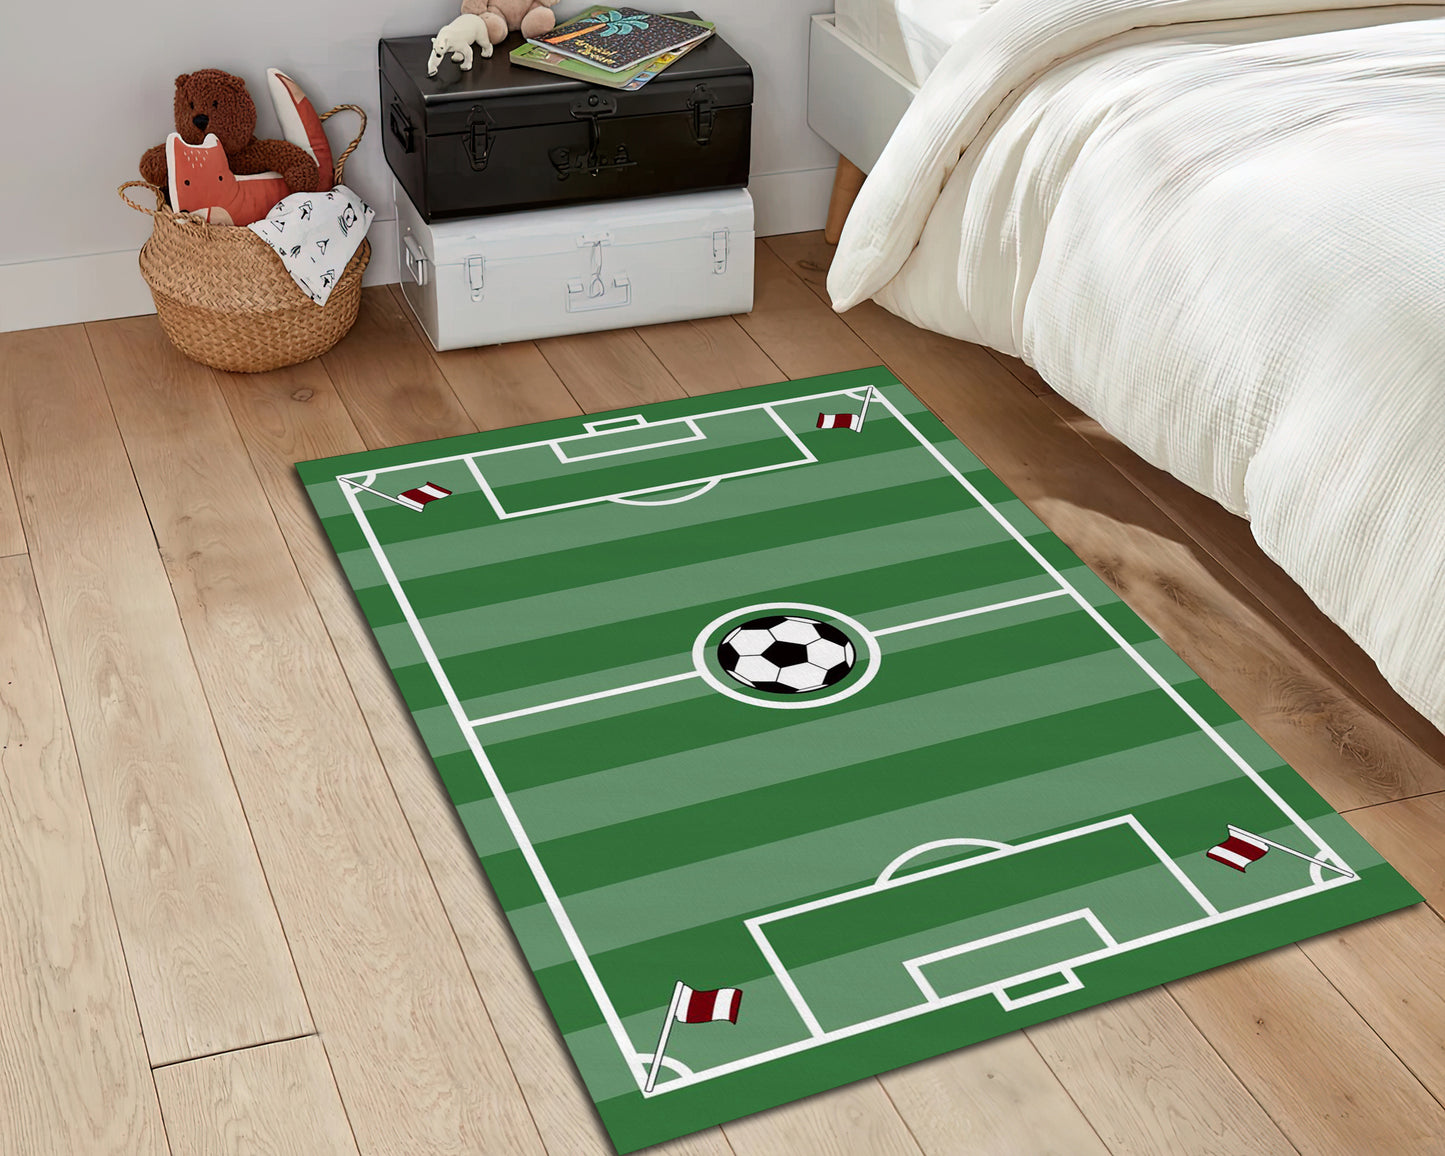 Football Field Rug, Boys Room Carpet, Sport mat, Play Room Decor, Football Lover Gift